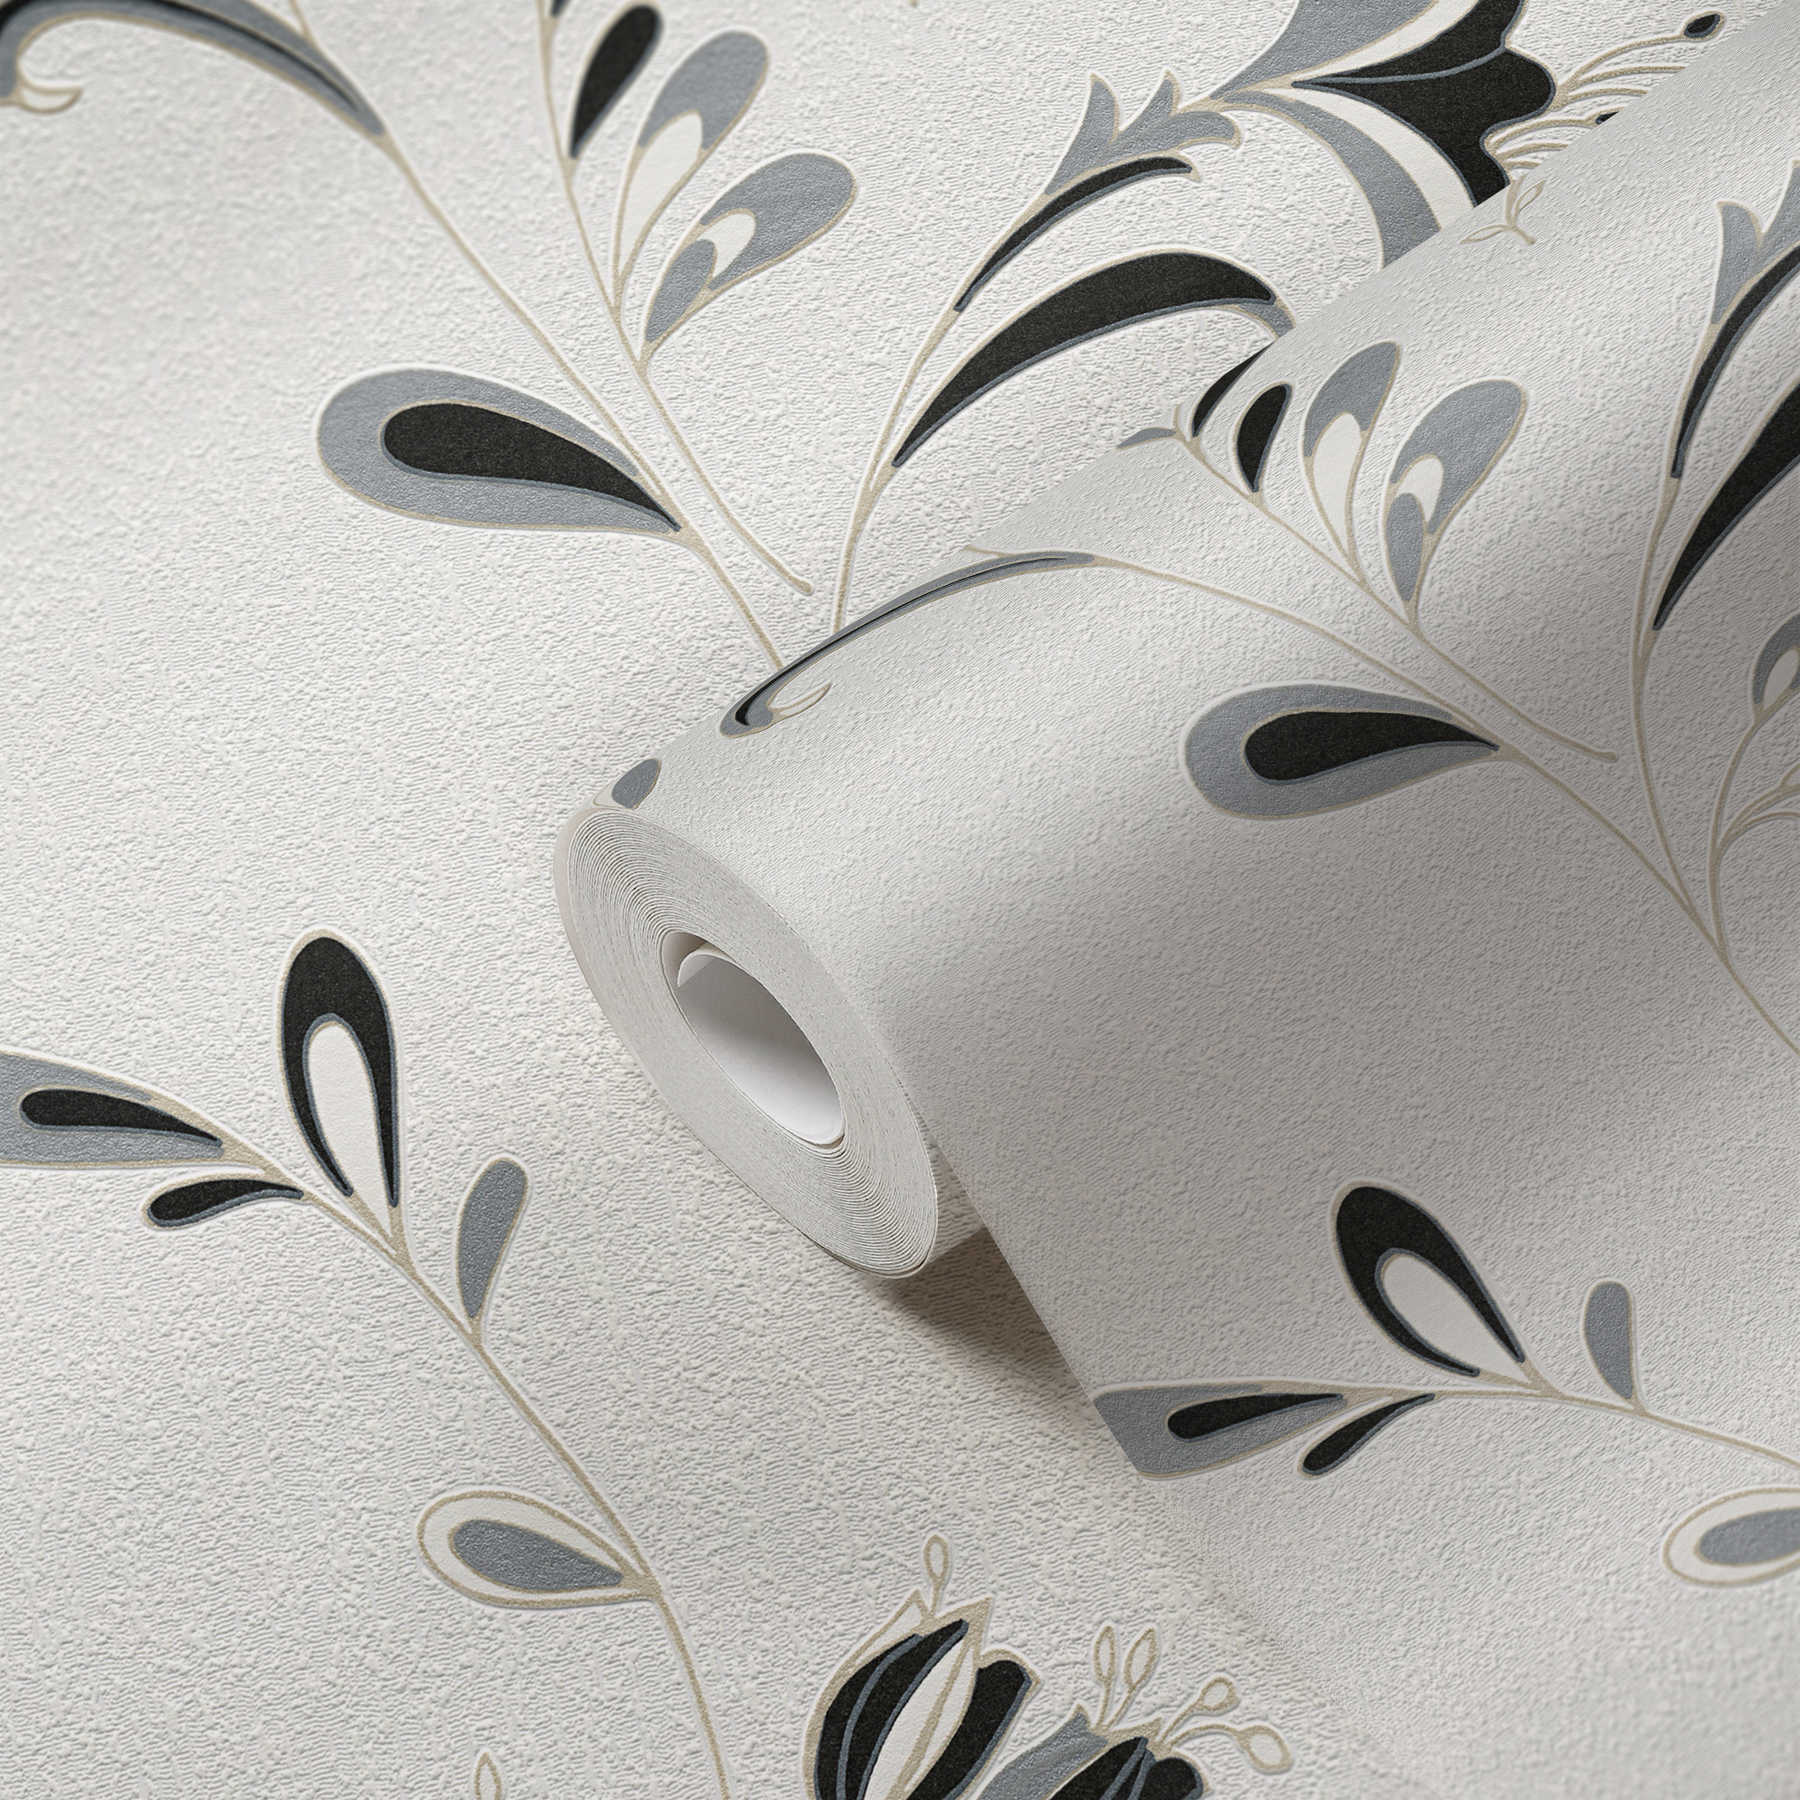             Papel pintado con motivos florales, acentos plateados y textura - negro, blanco, plata
        